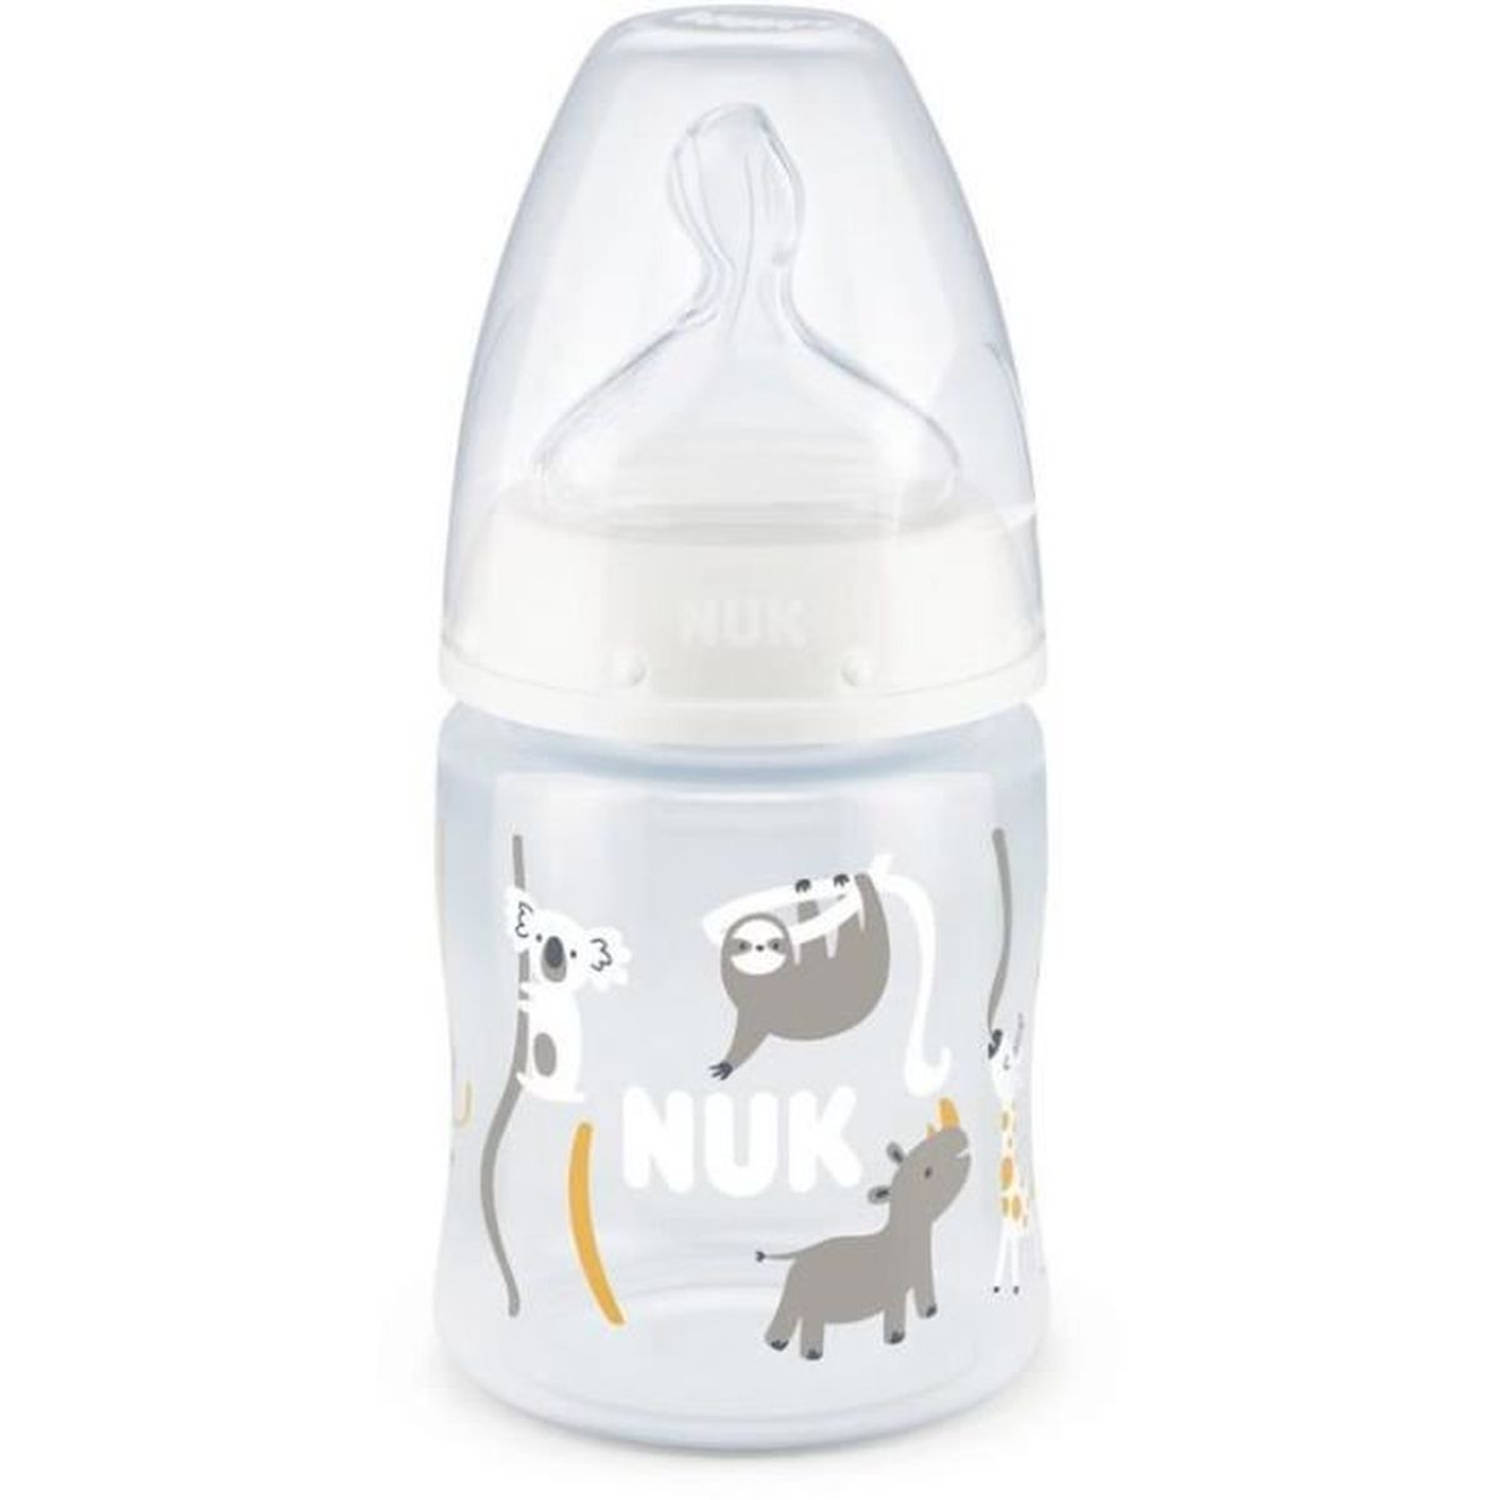 Nuk Serenity+ Babyfles - Wijde hals - Temperatuurregeling - 150 ml - 0-6 maanden - Koala